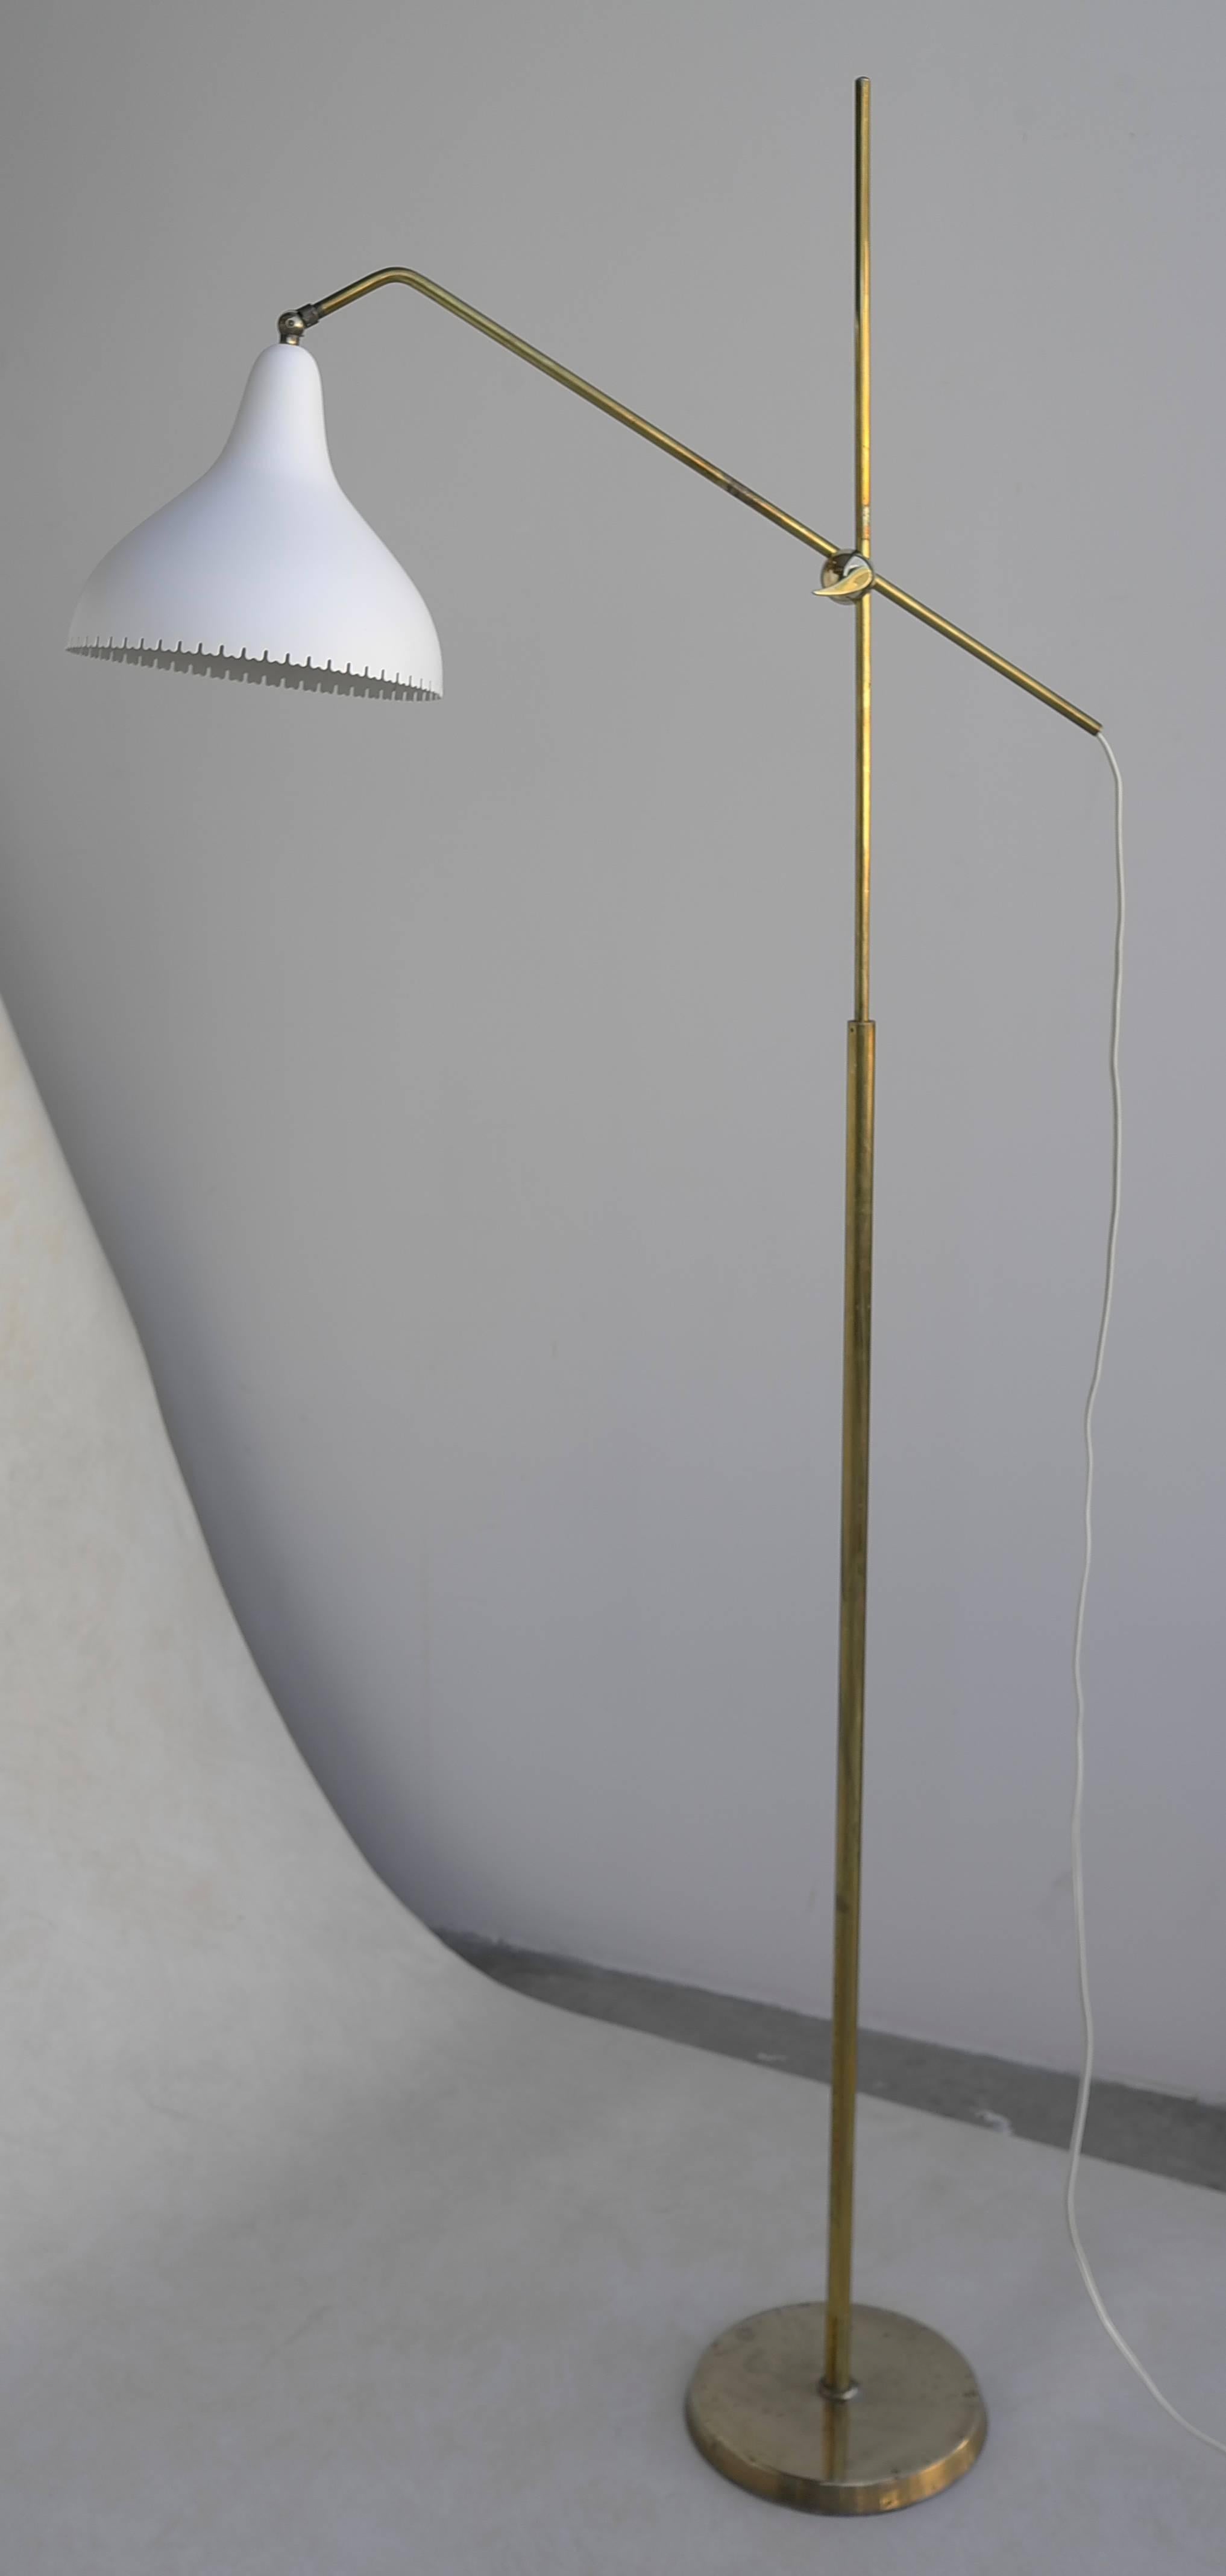 Stylish Danish Floorlamp in brass with white aluminium shade